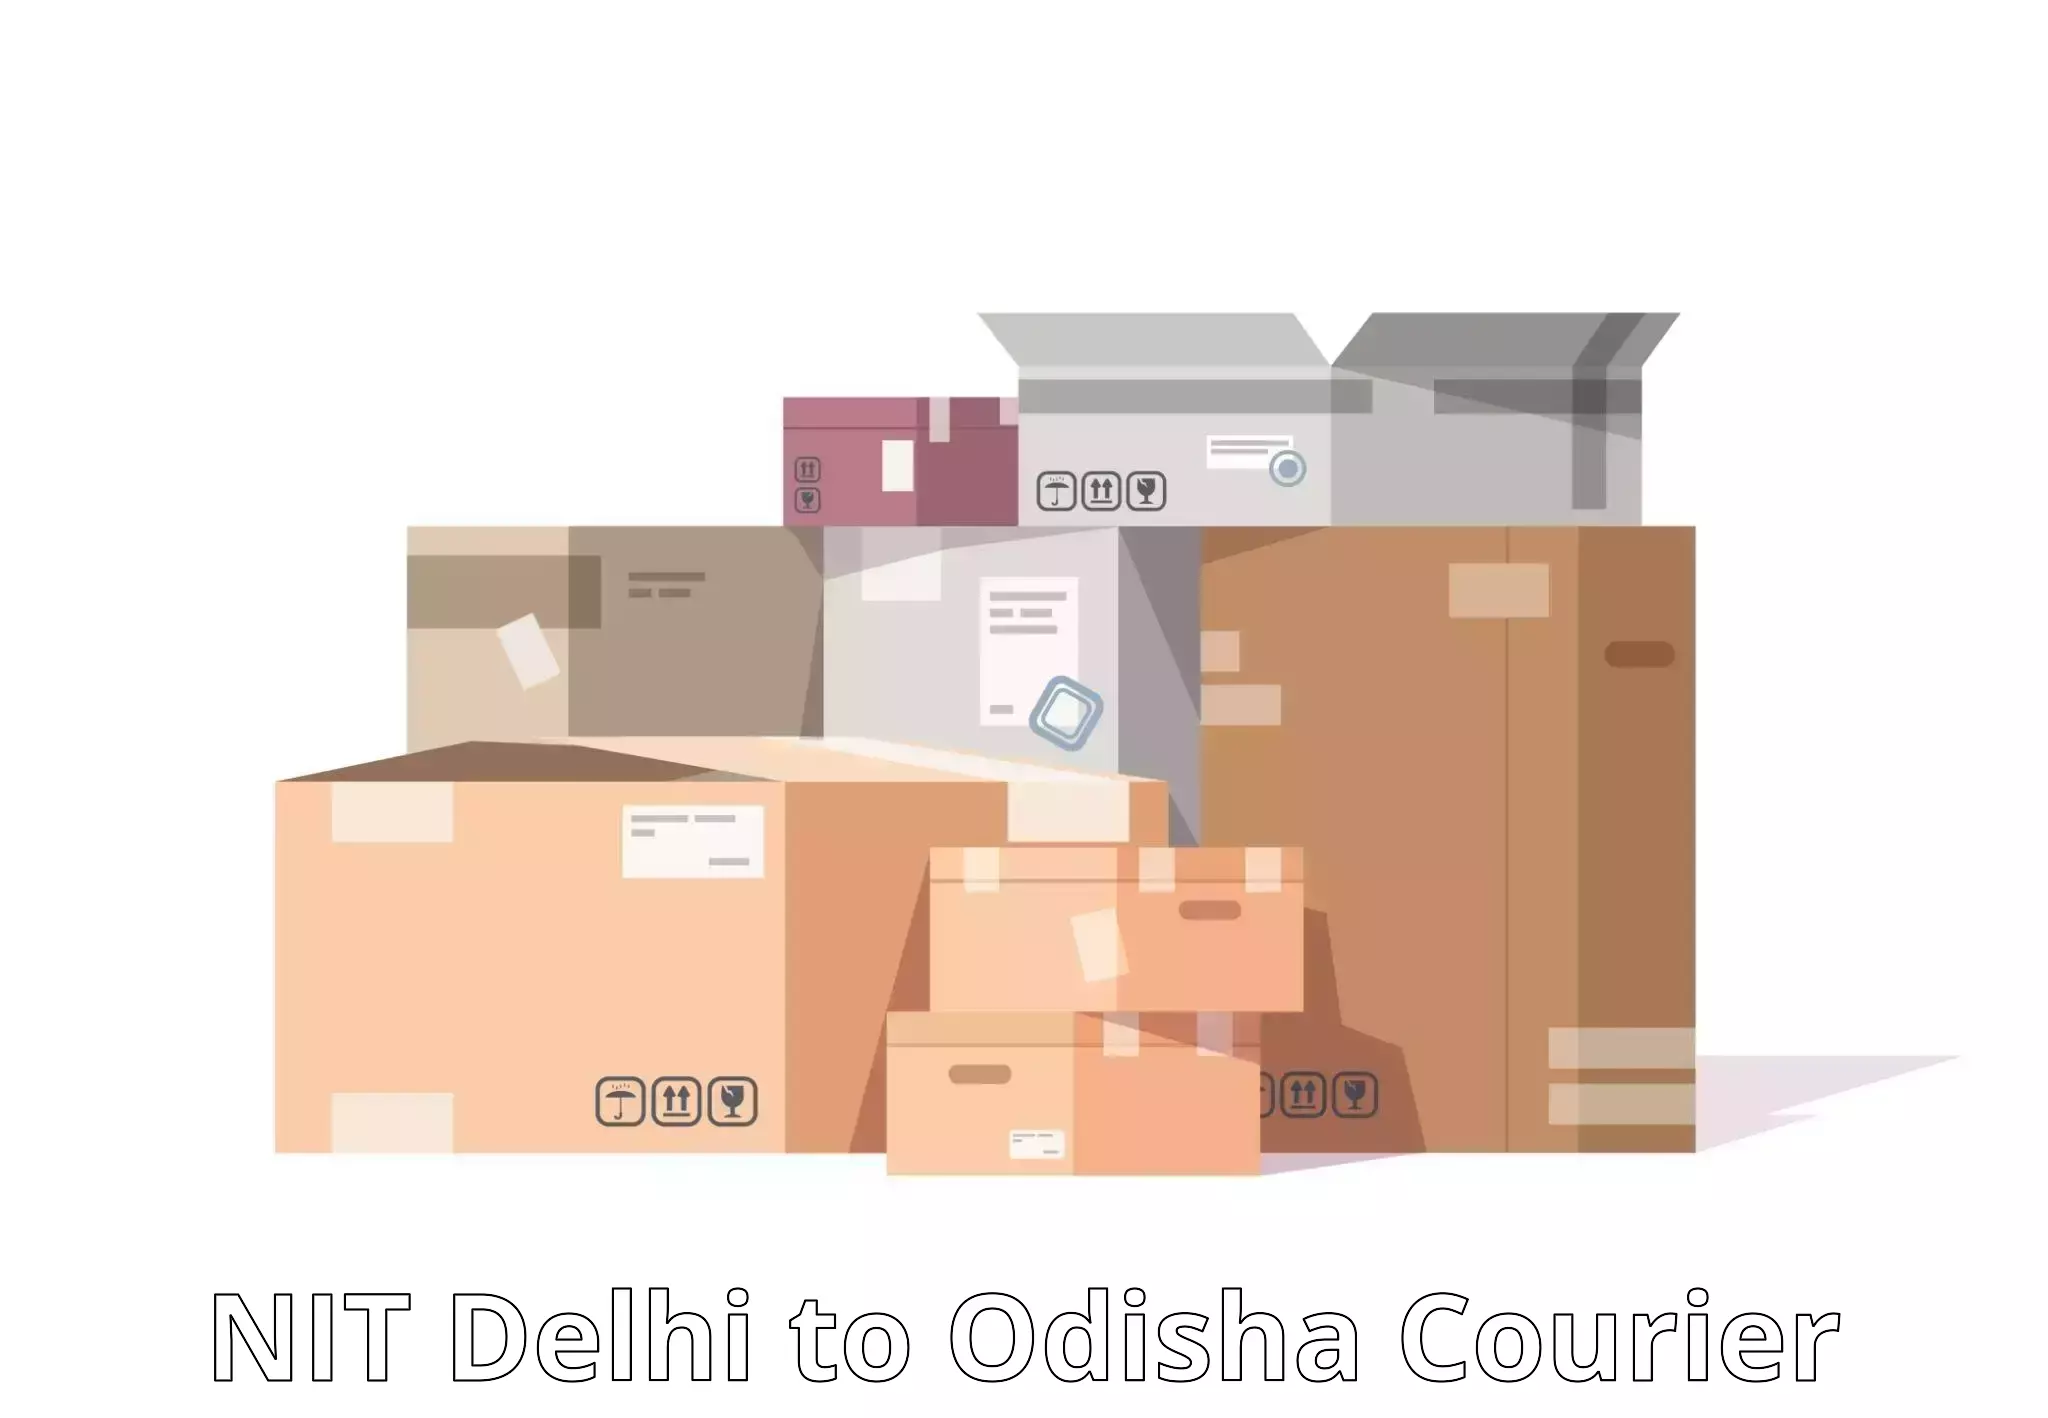 Urgent courier needs NIT Delhi to Chandipur